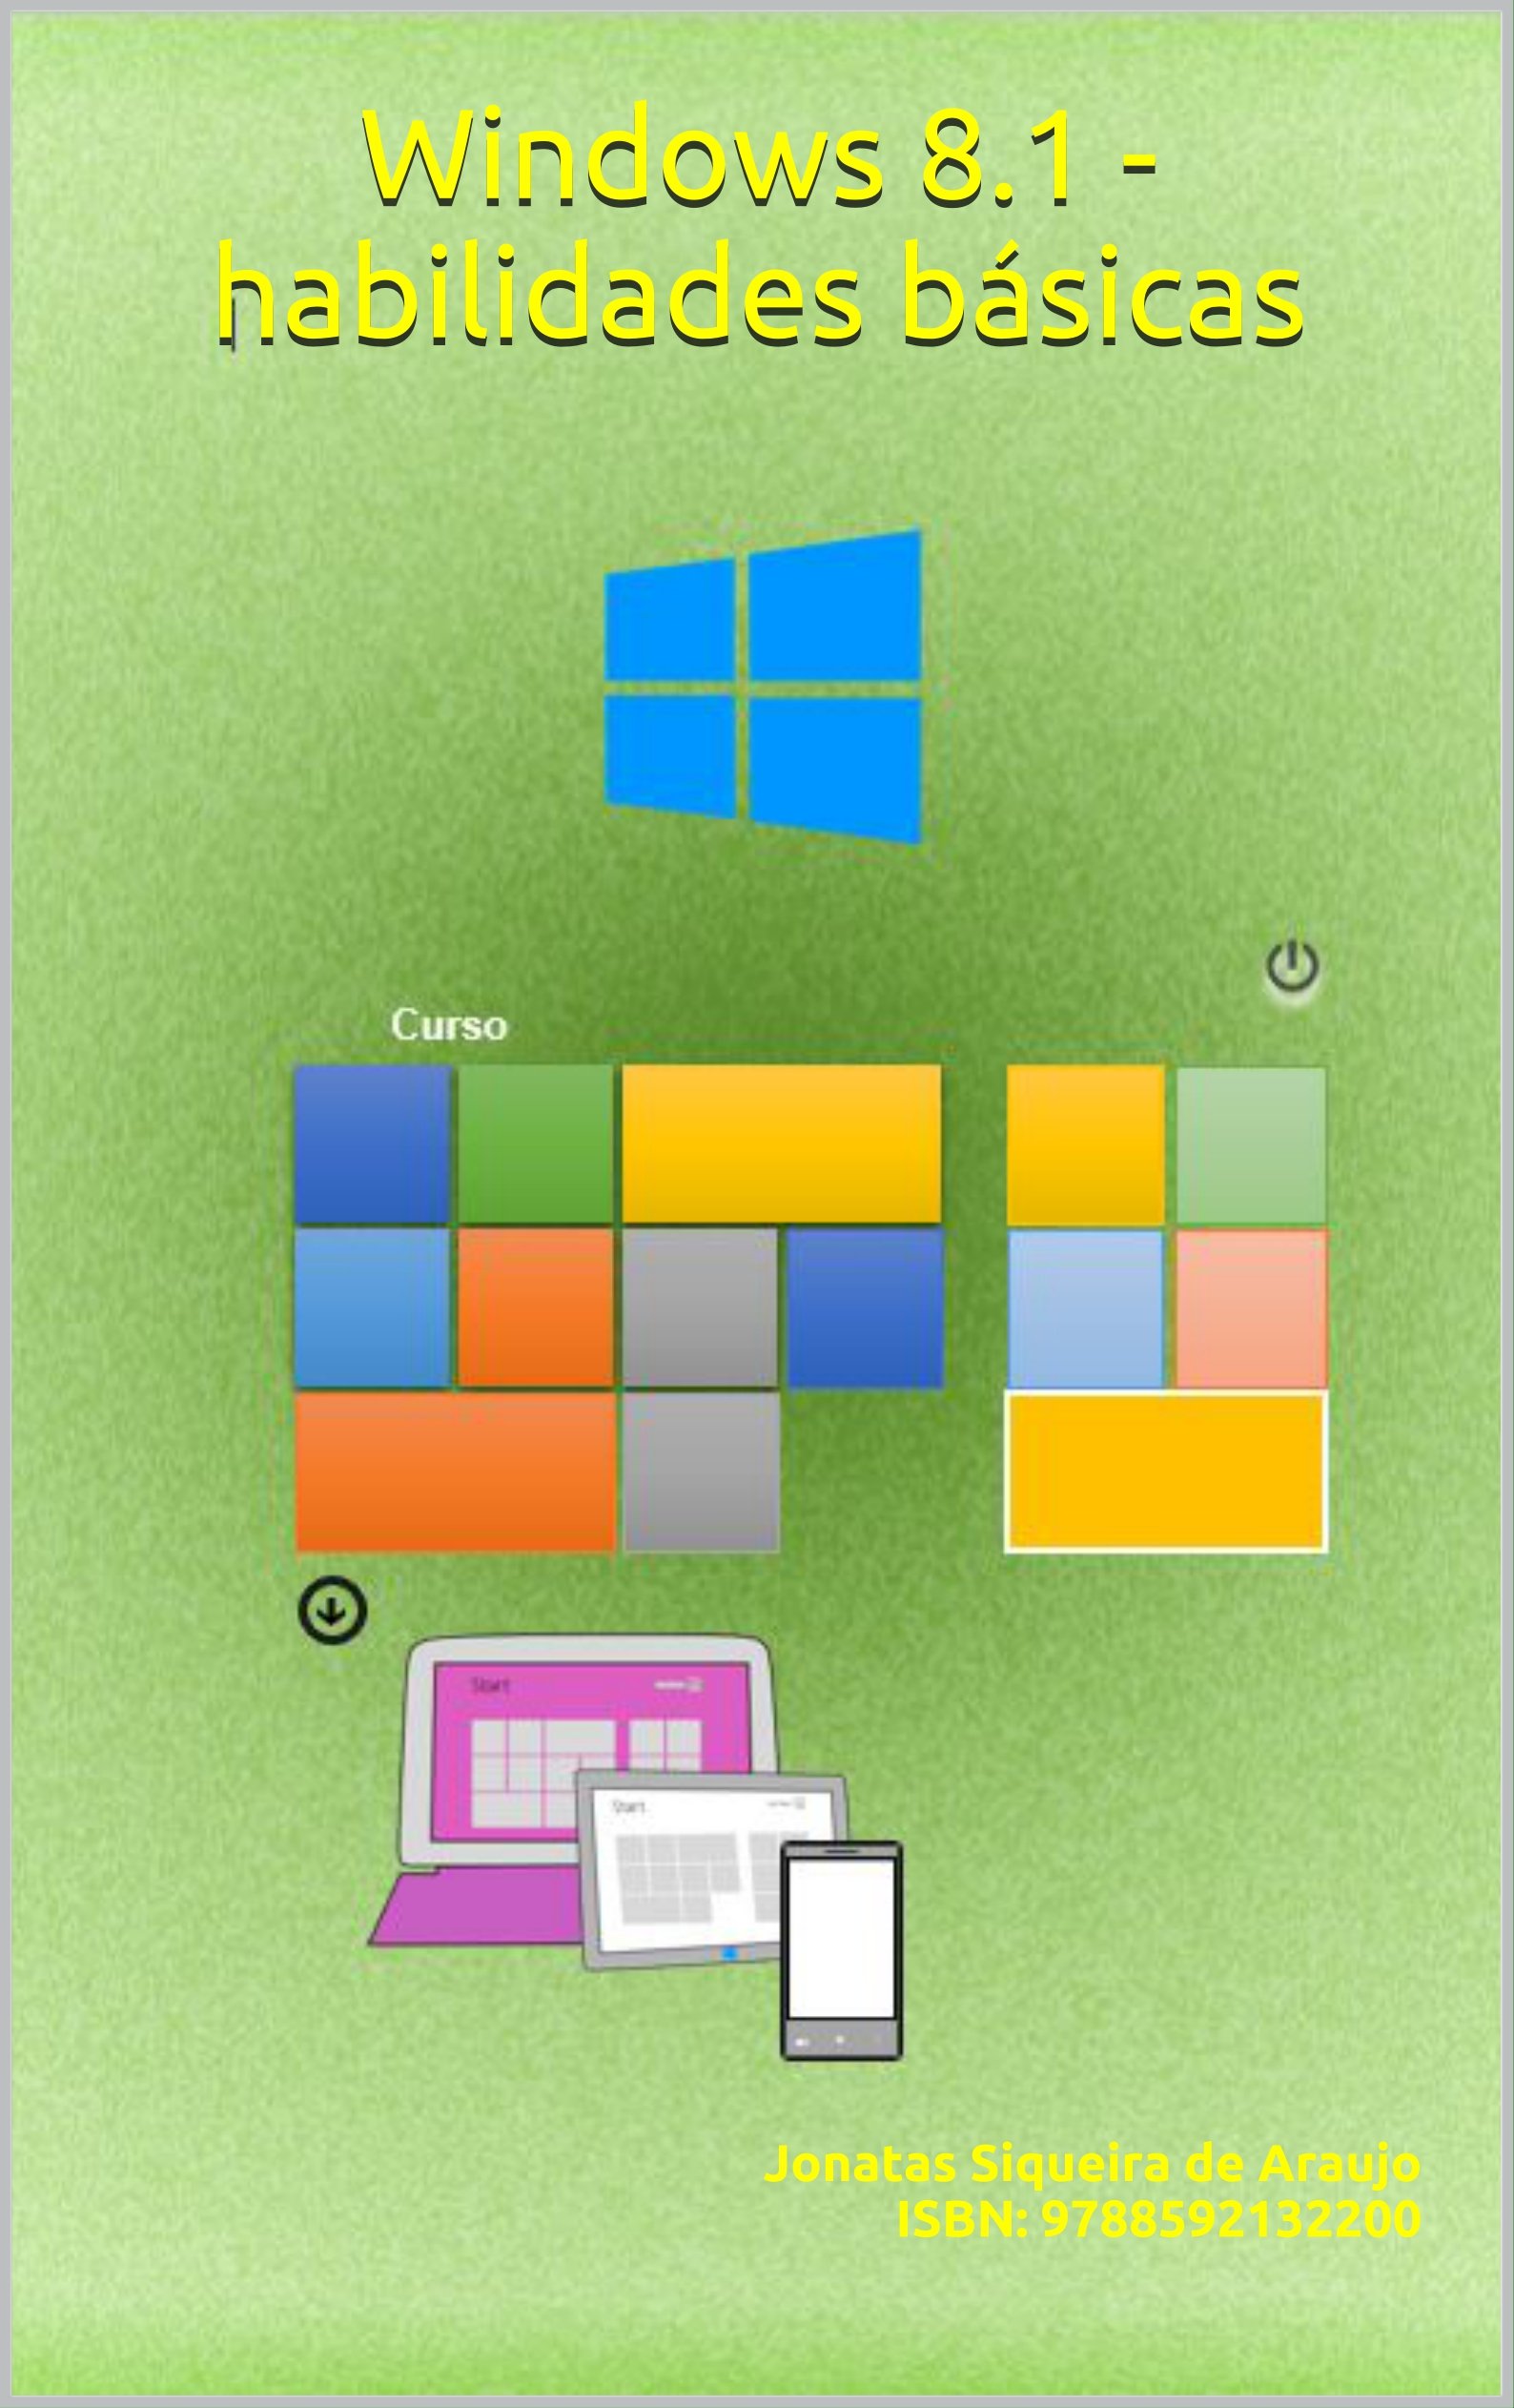 Windows 8.1 - habilidades básicas (Portuguese Edition)